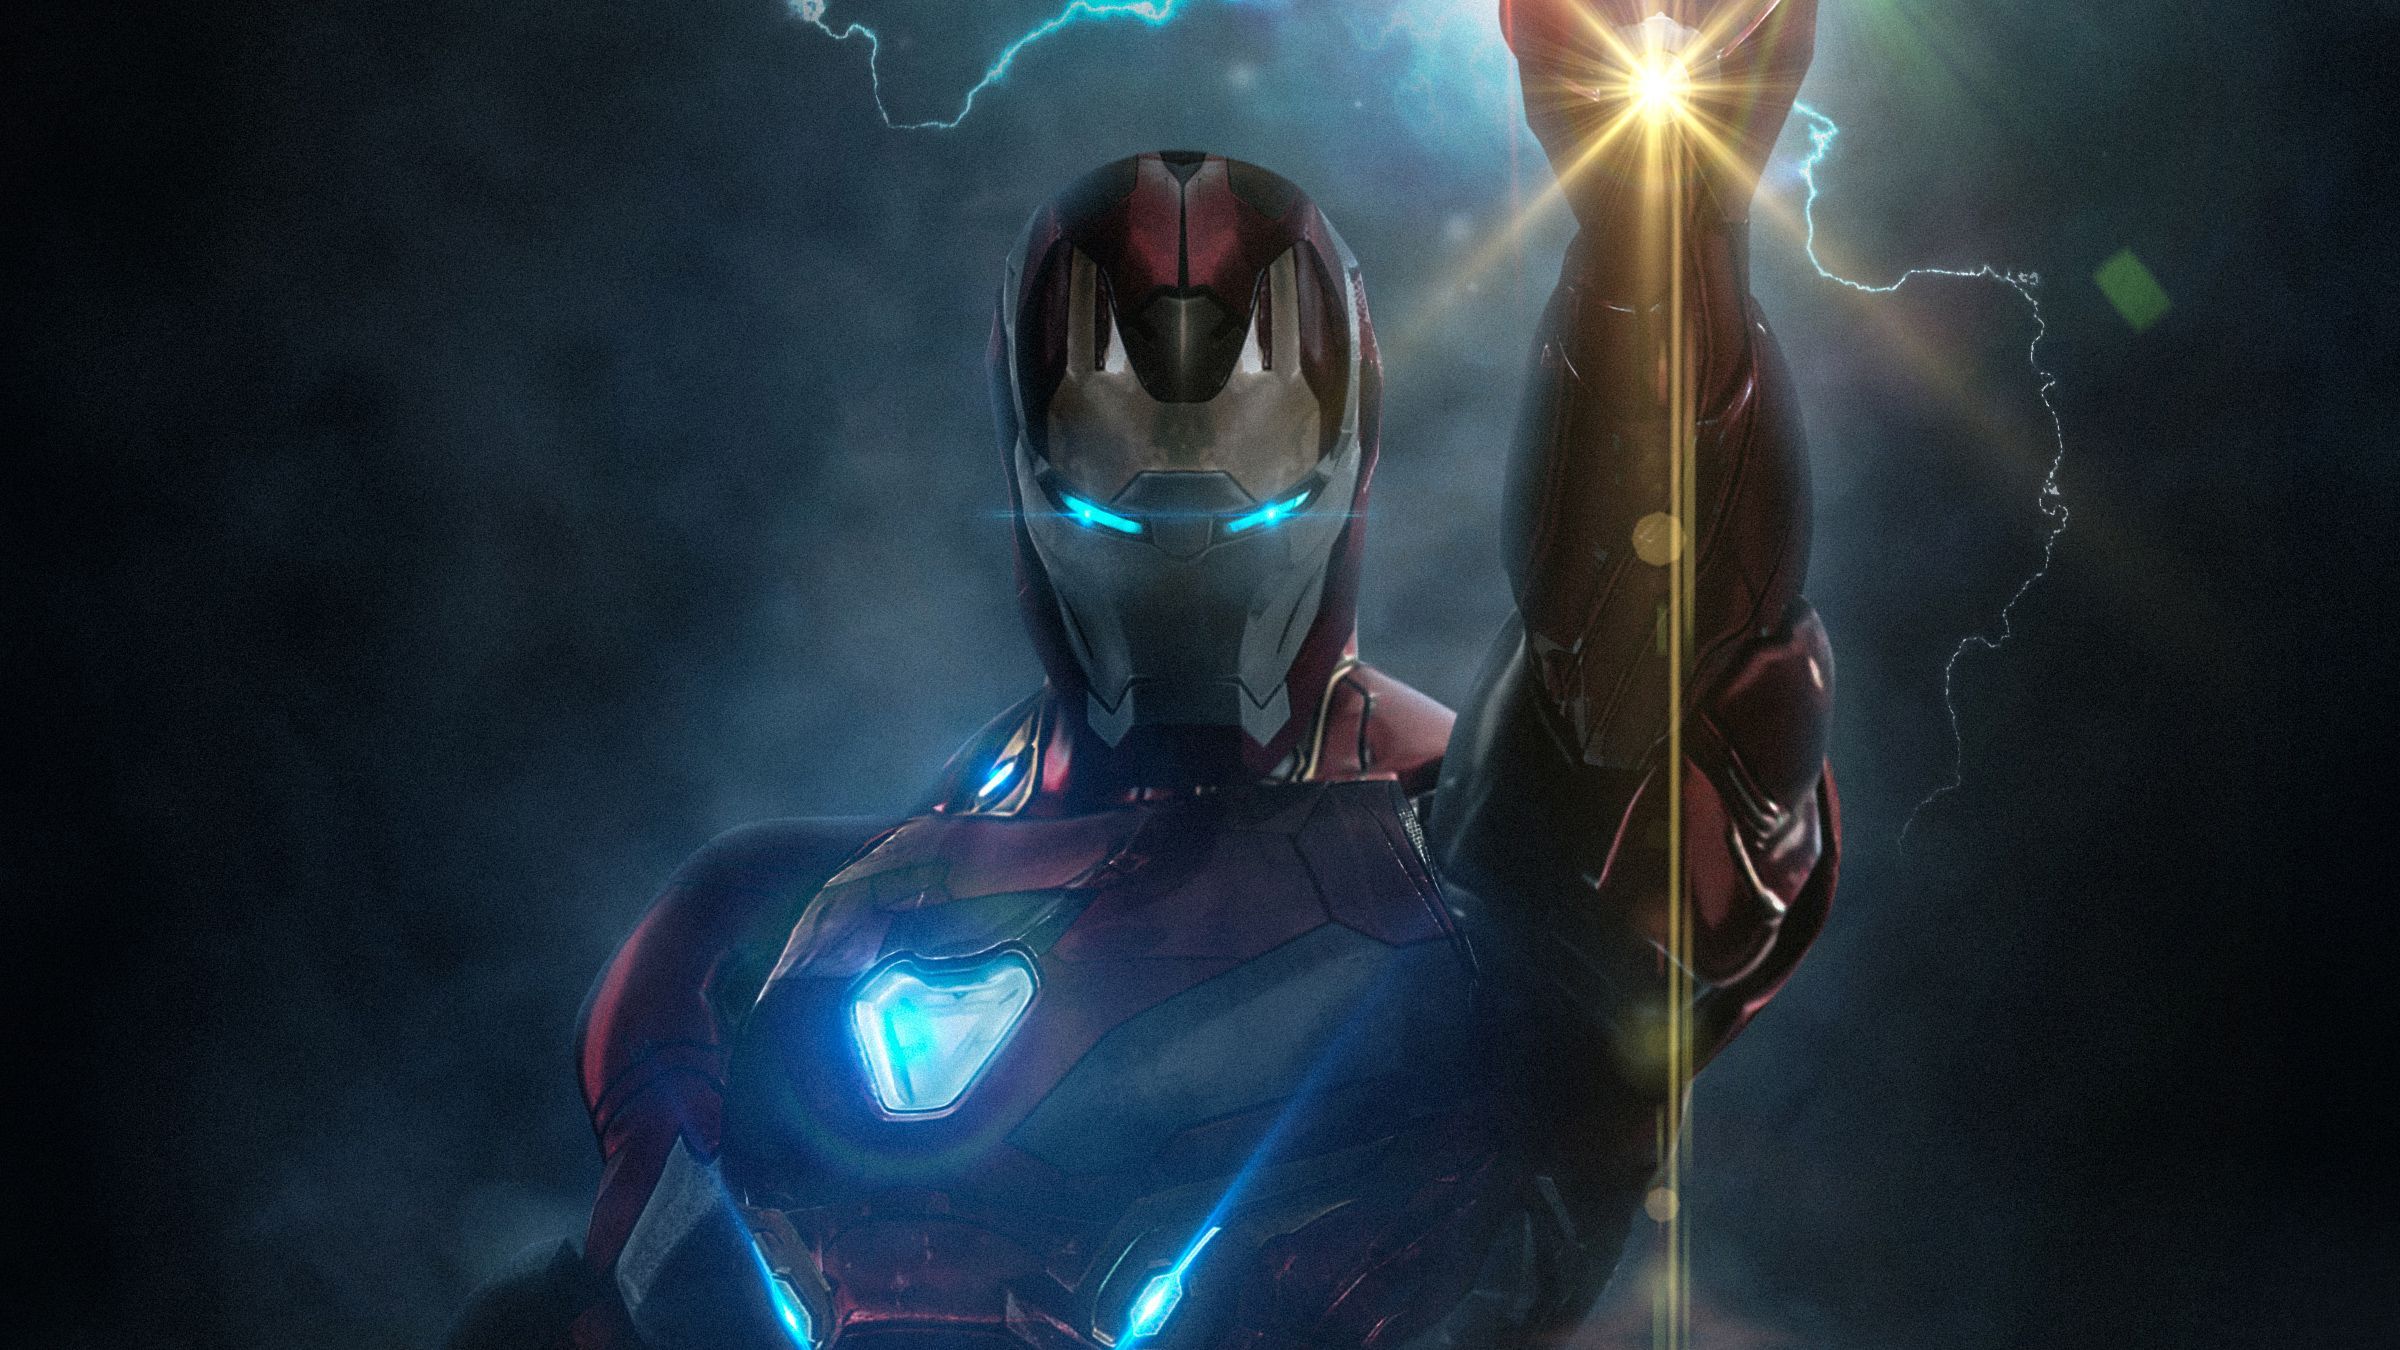 Avengers Endgame HD Wallpaper For Pc. Avengers wallpaper, Iron